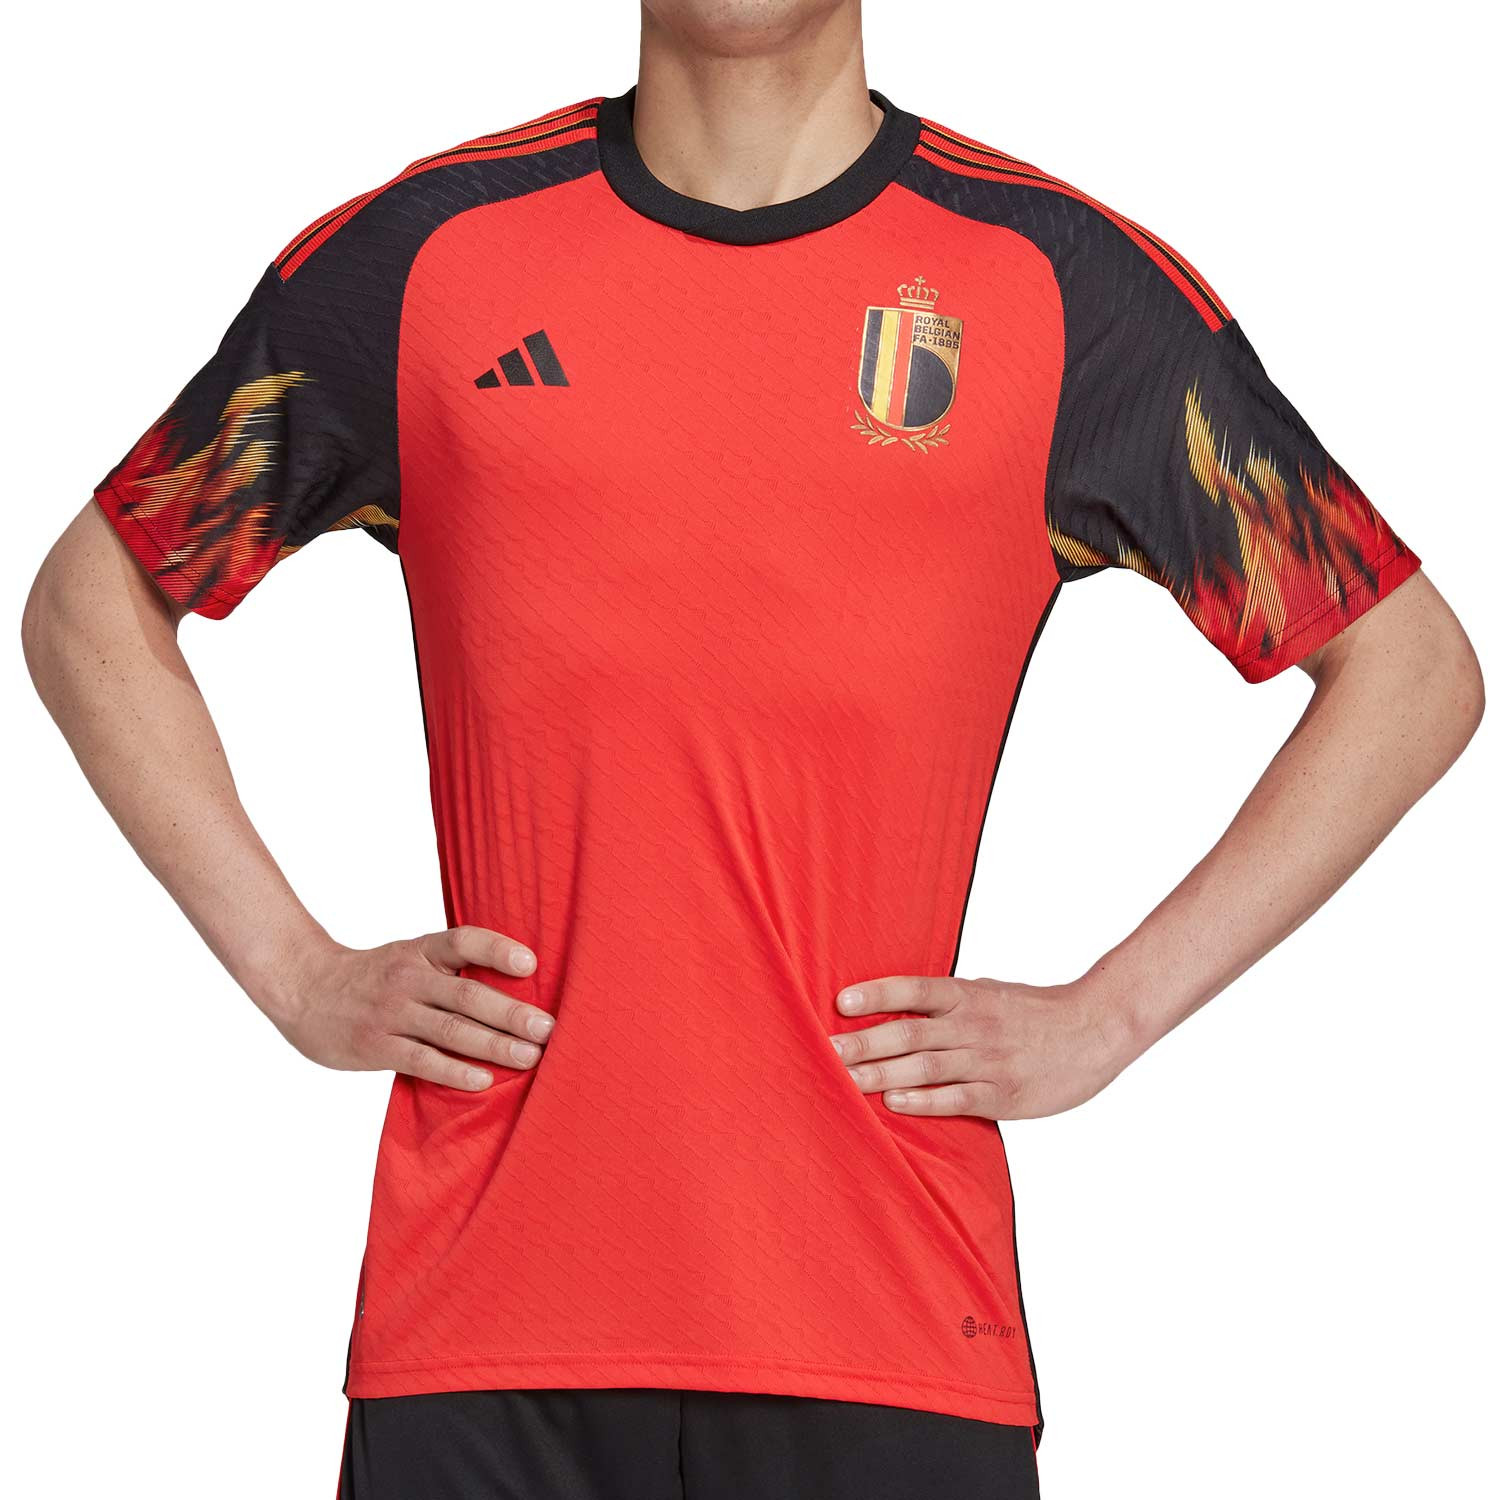 Camiseta adidas Bélgica 2023 authentic roja negra futbolmania